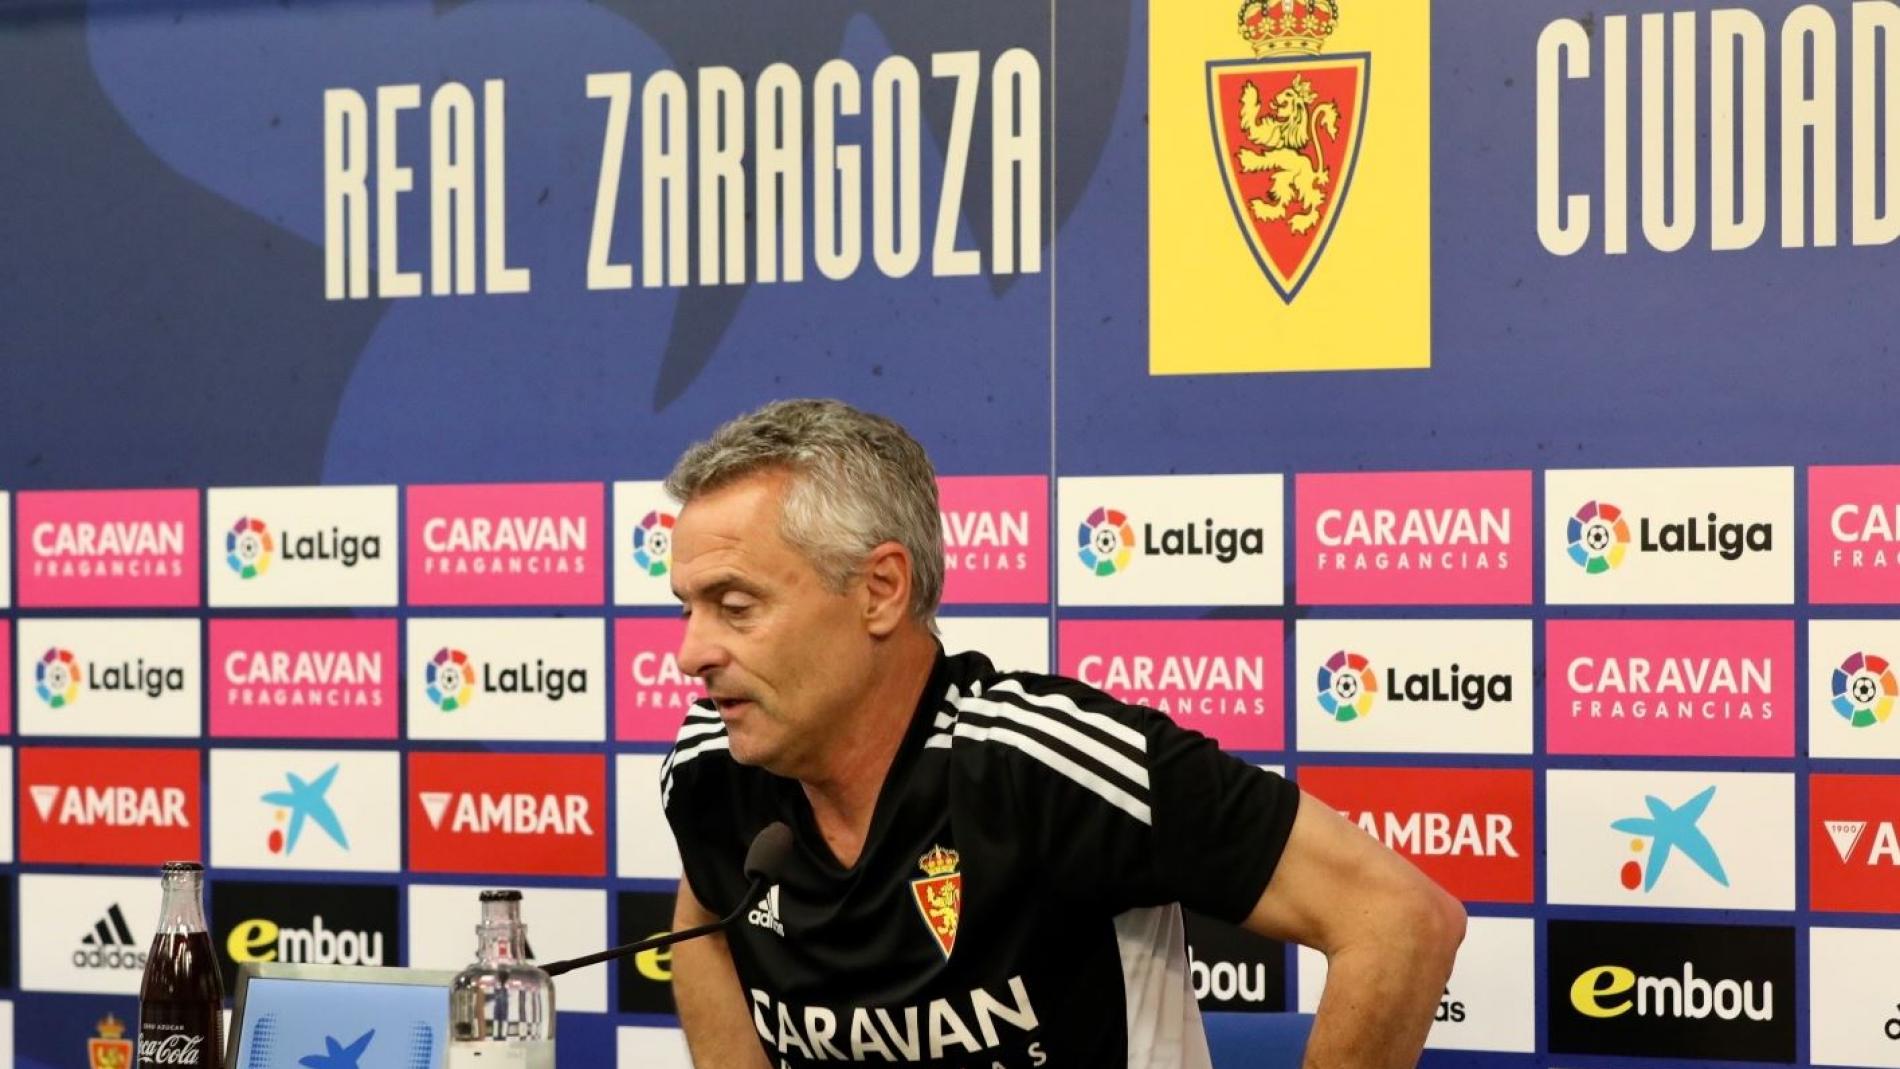 El Real Zaragoza, a seguir con su progresión, Nuestro deporte